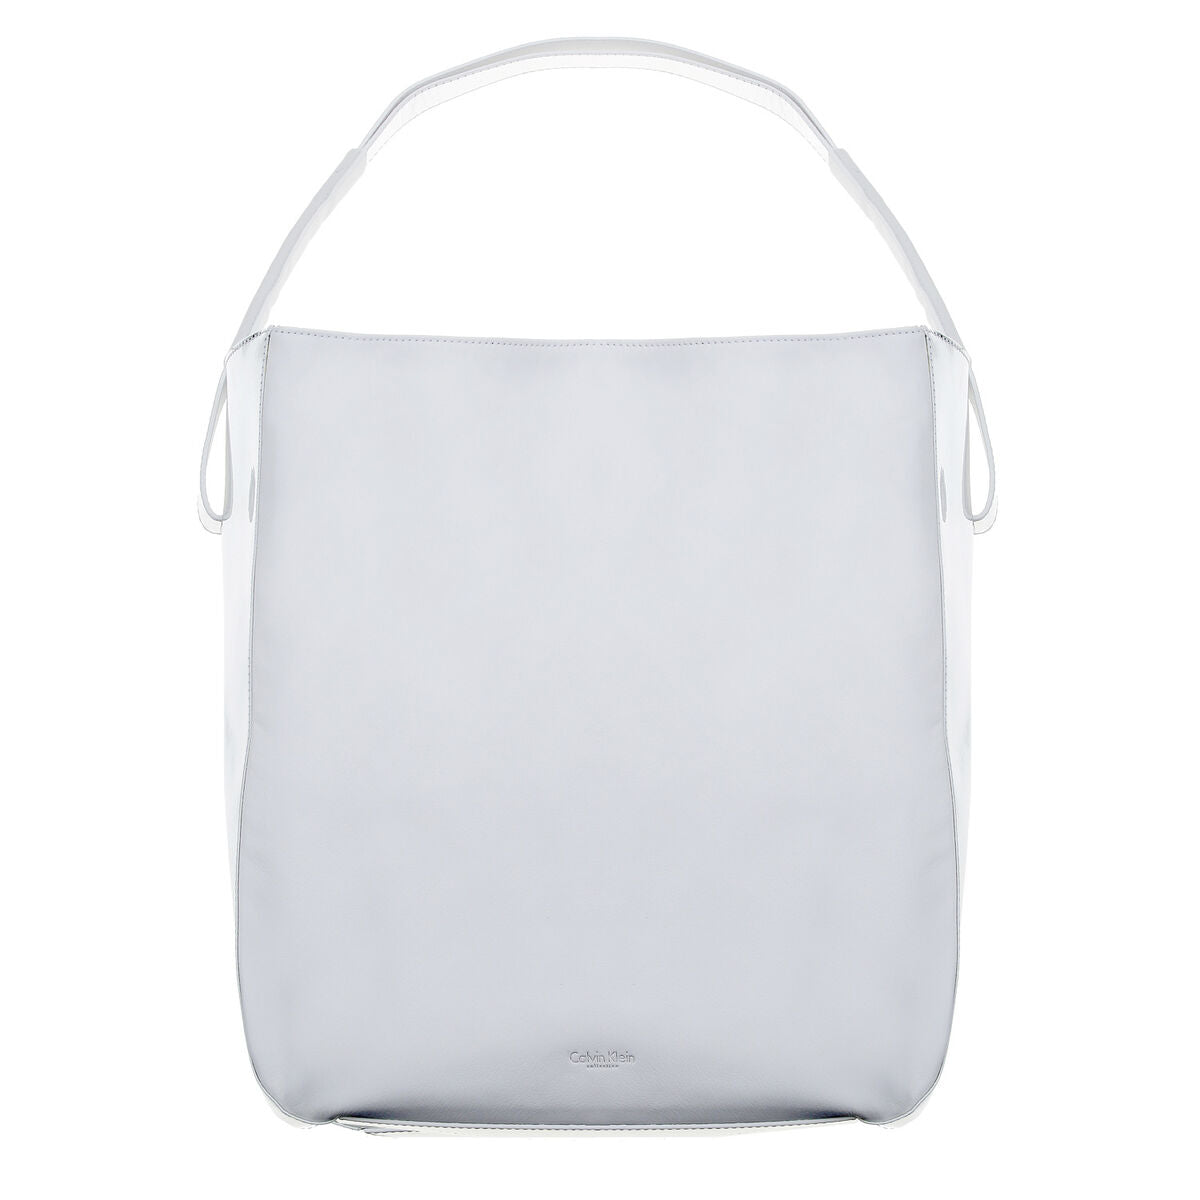 Kaufe Damen Handtasche Calvin Klein 0813EB001-CK105-6308 Weiß 37 x 32 x 14 cm bei AWK Flagship um € 125.00